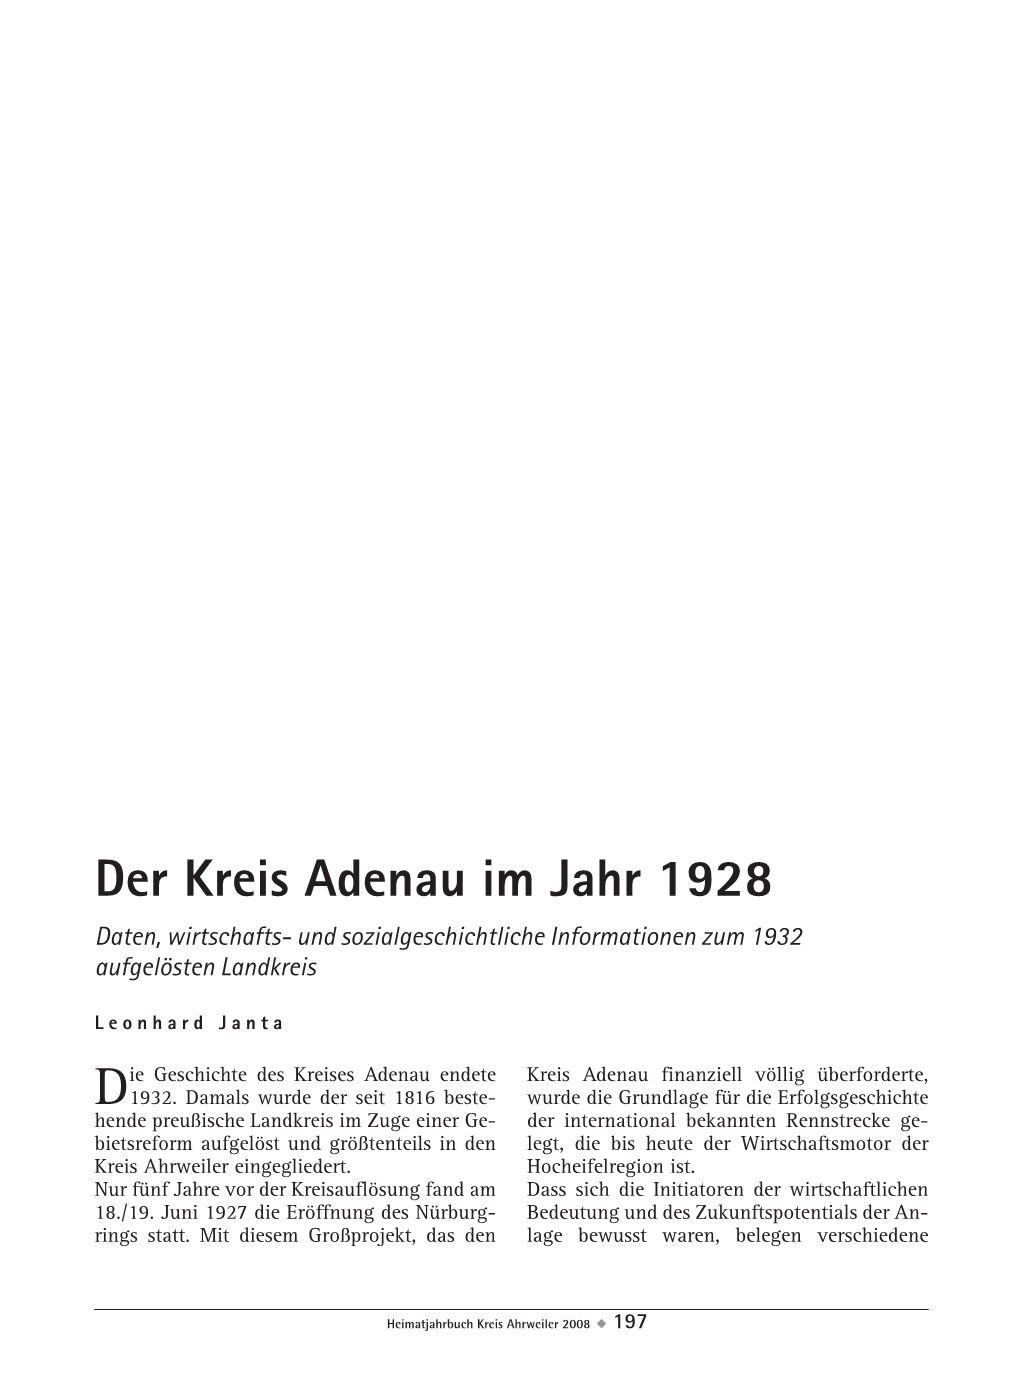 Der Kreis Adenau Im Jahr 1928. Daten, Wirtschafts